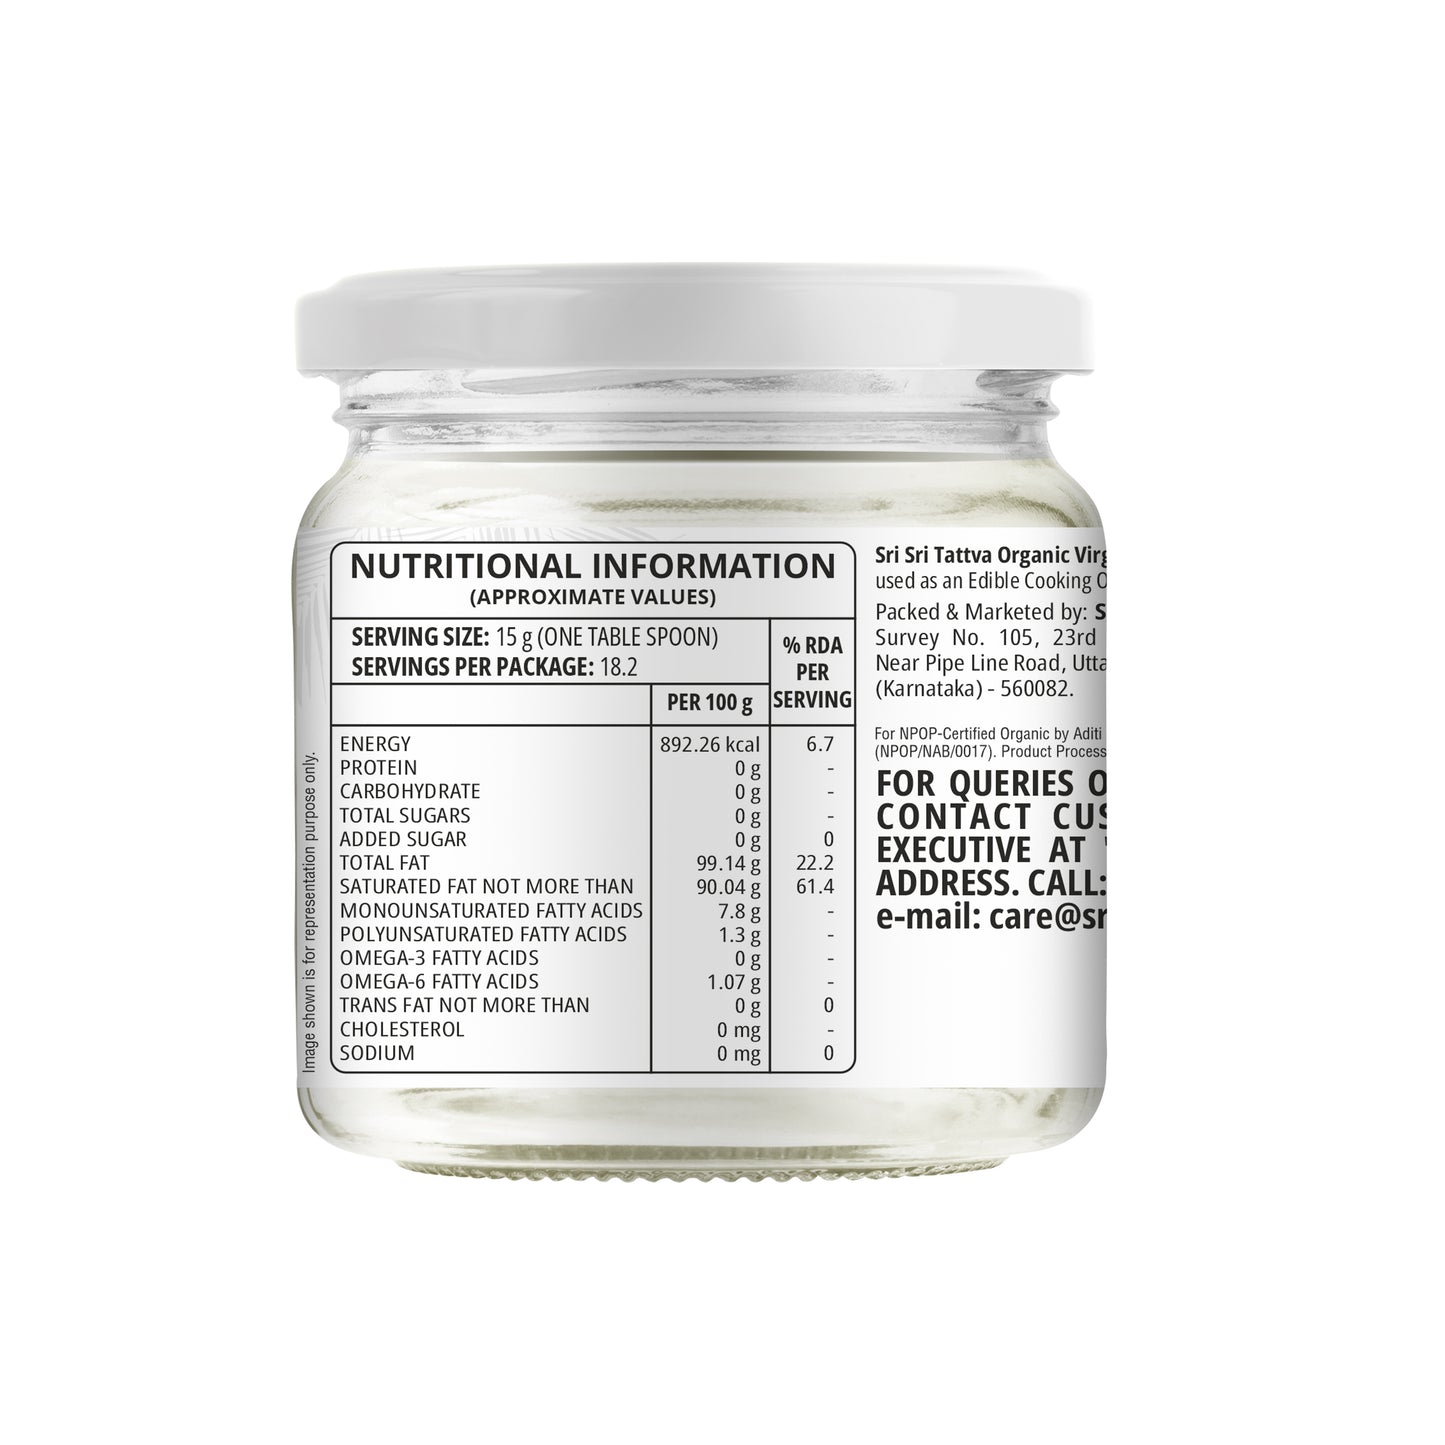 Organic Virgin Coconut Oil - Cold Pressed  | Unrefined | 300 ml